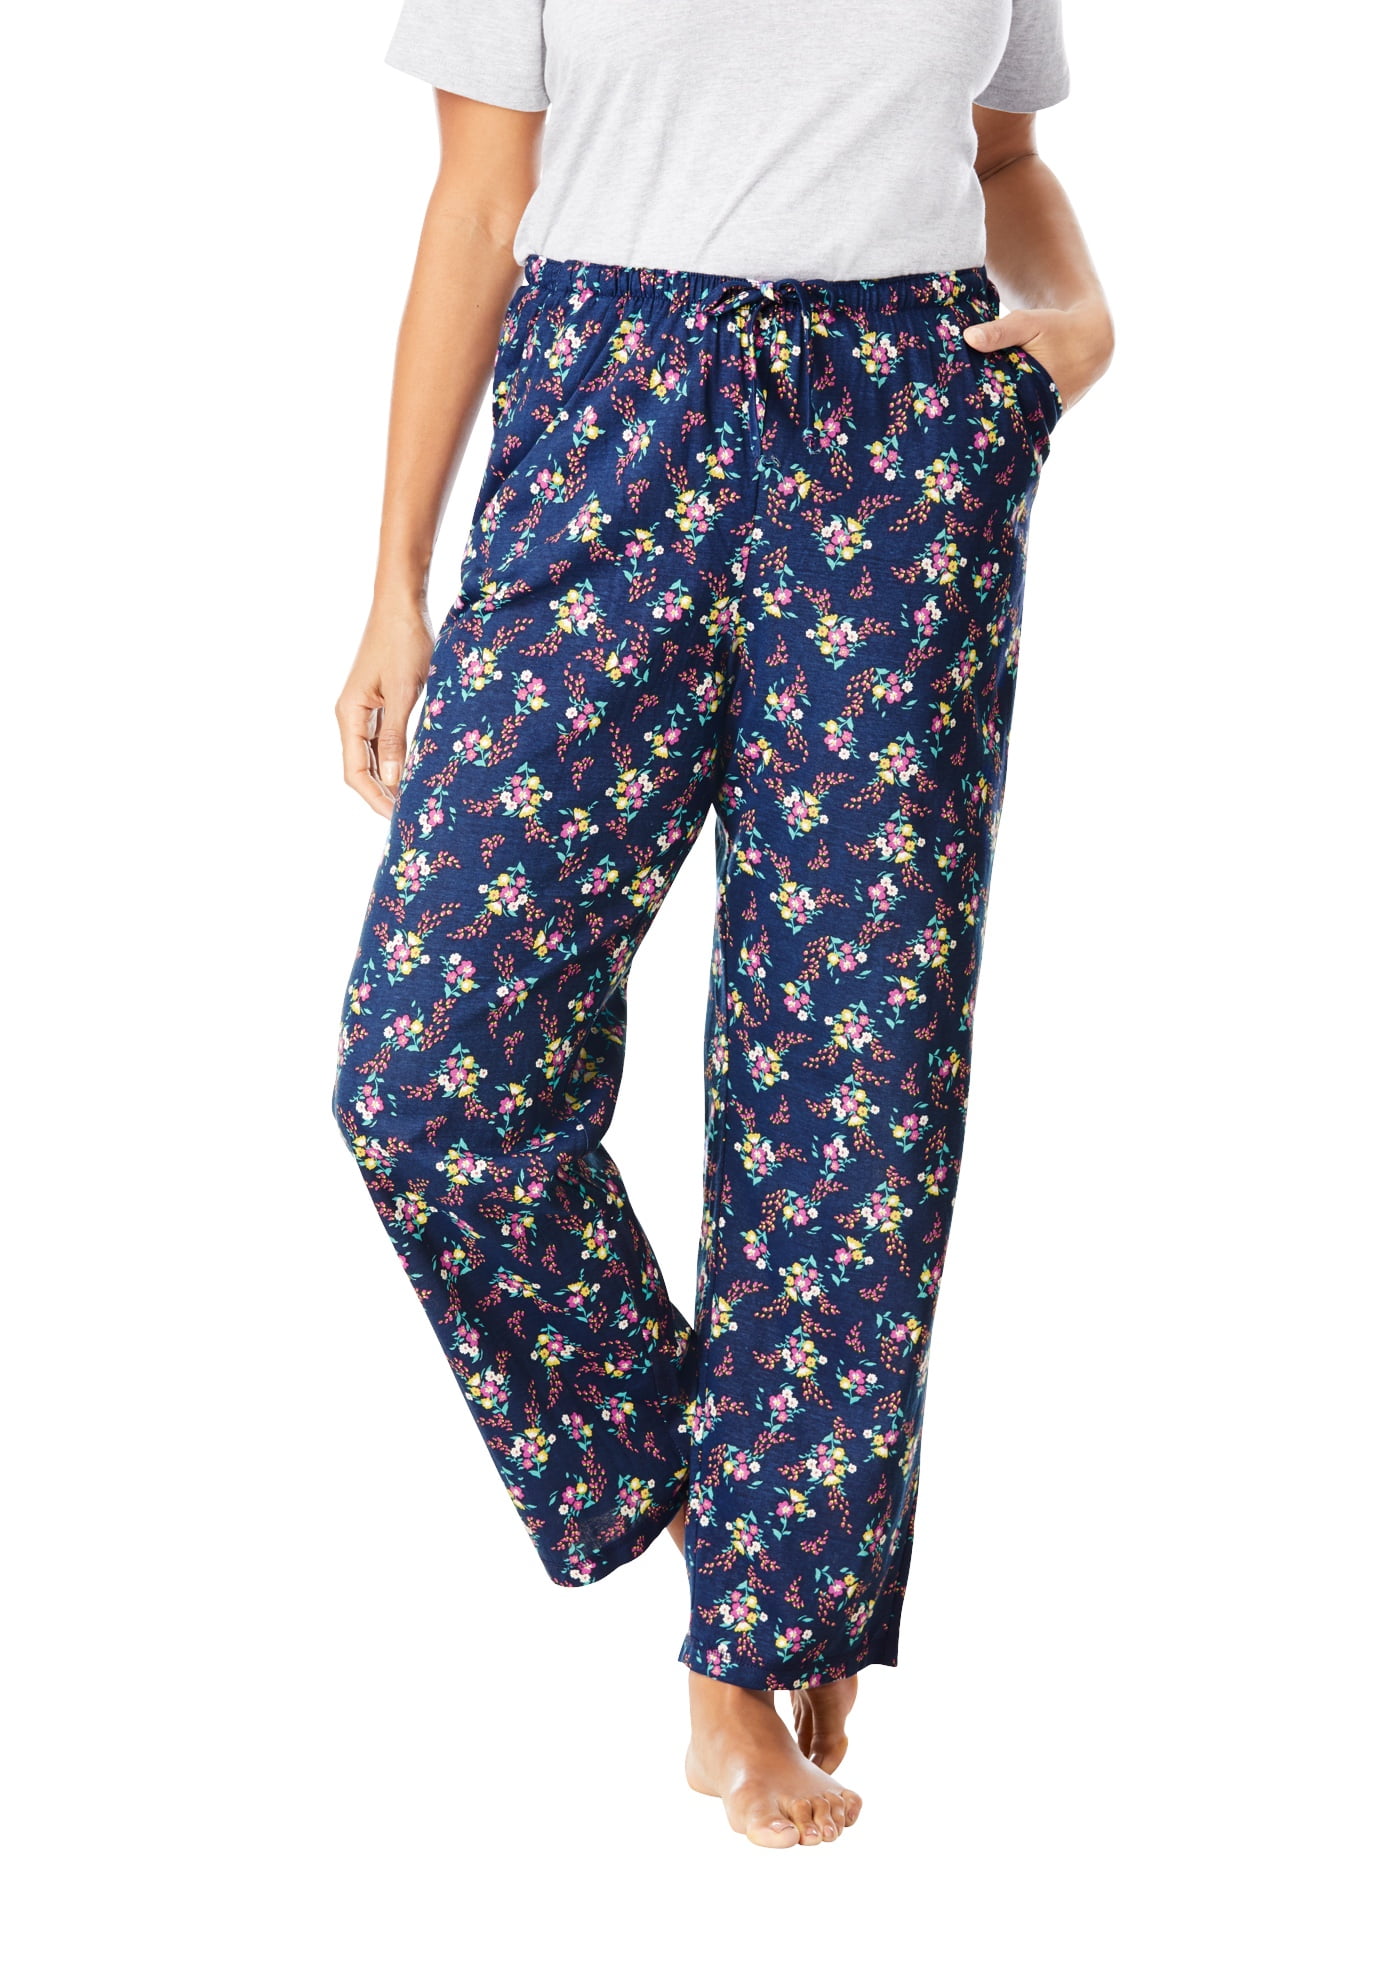 Dreams & Co Women's Plus Size Cotton Poplin Pj Pant Pajama Bottoms 